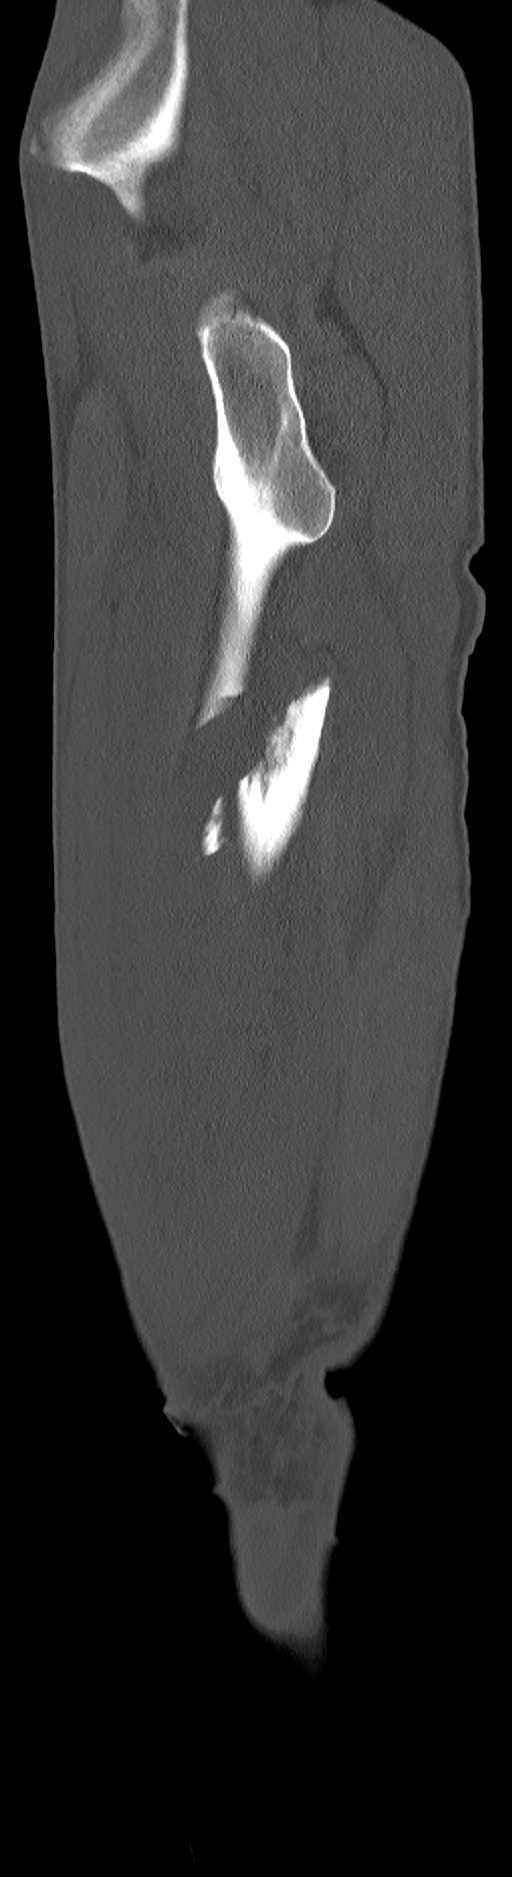 Chronic osteomyelitis (with sequestrum) (Radiopaedia 74813-85822 C 92).jpg